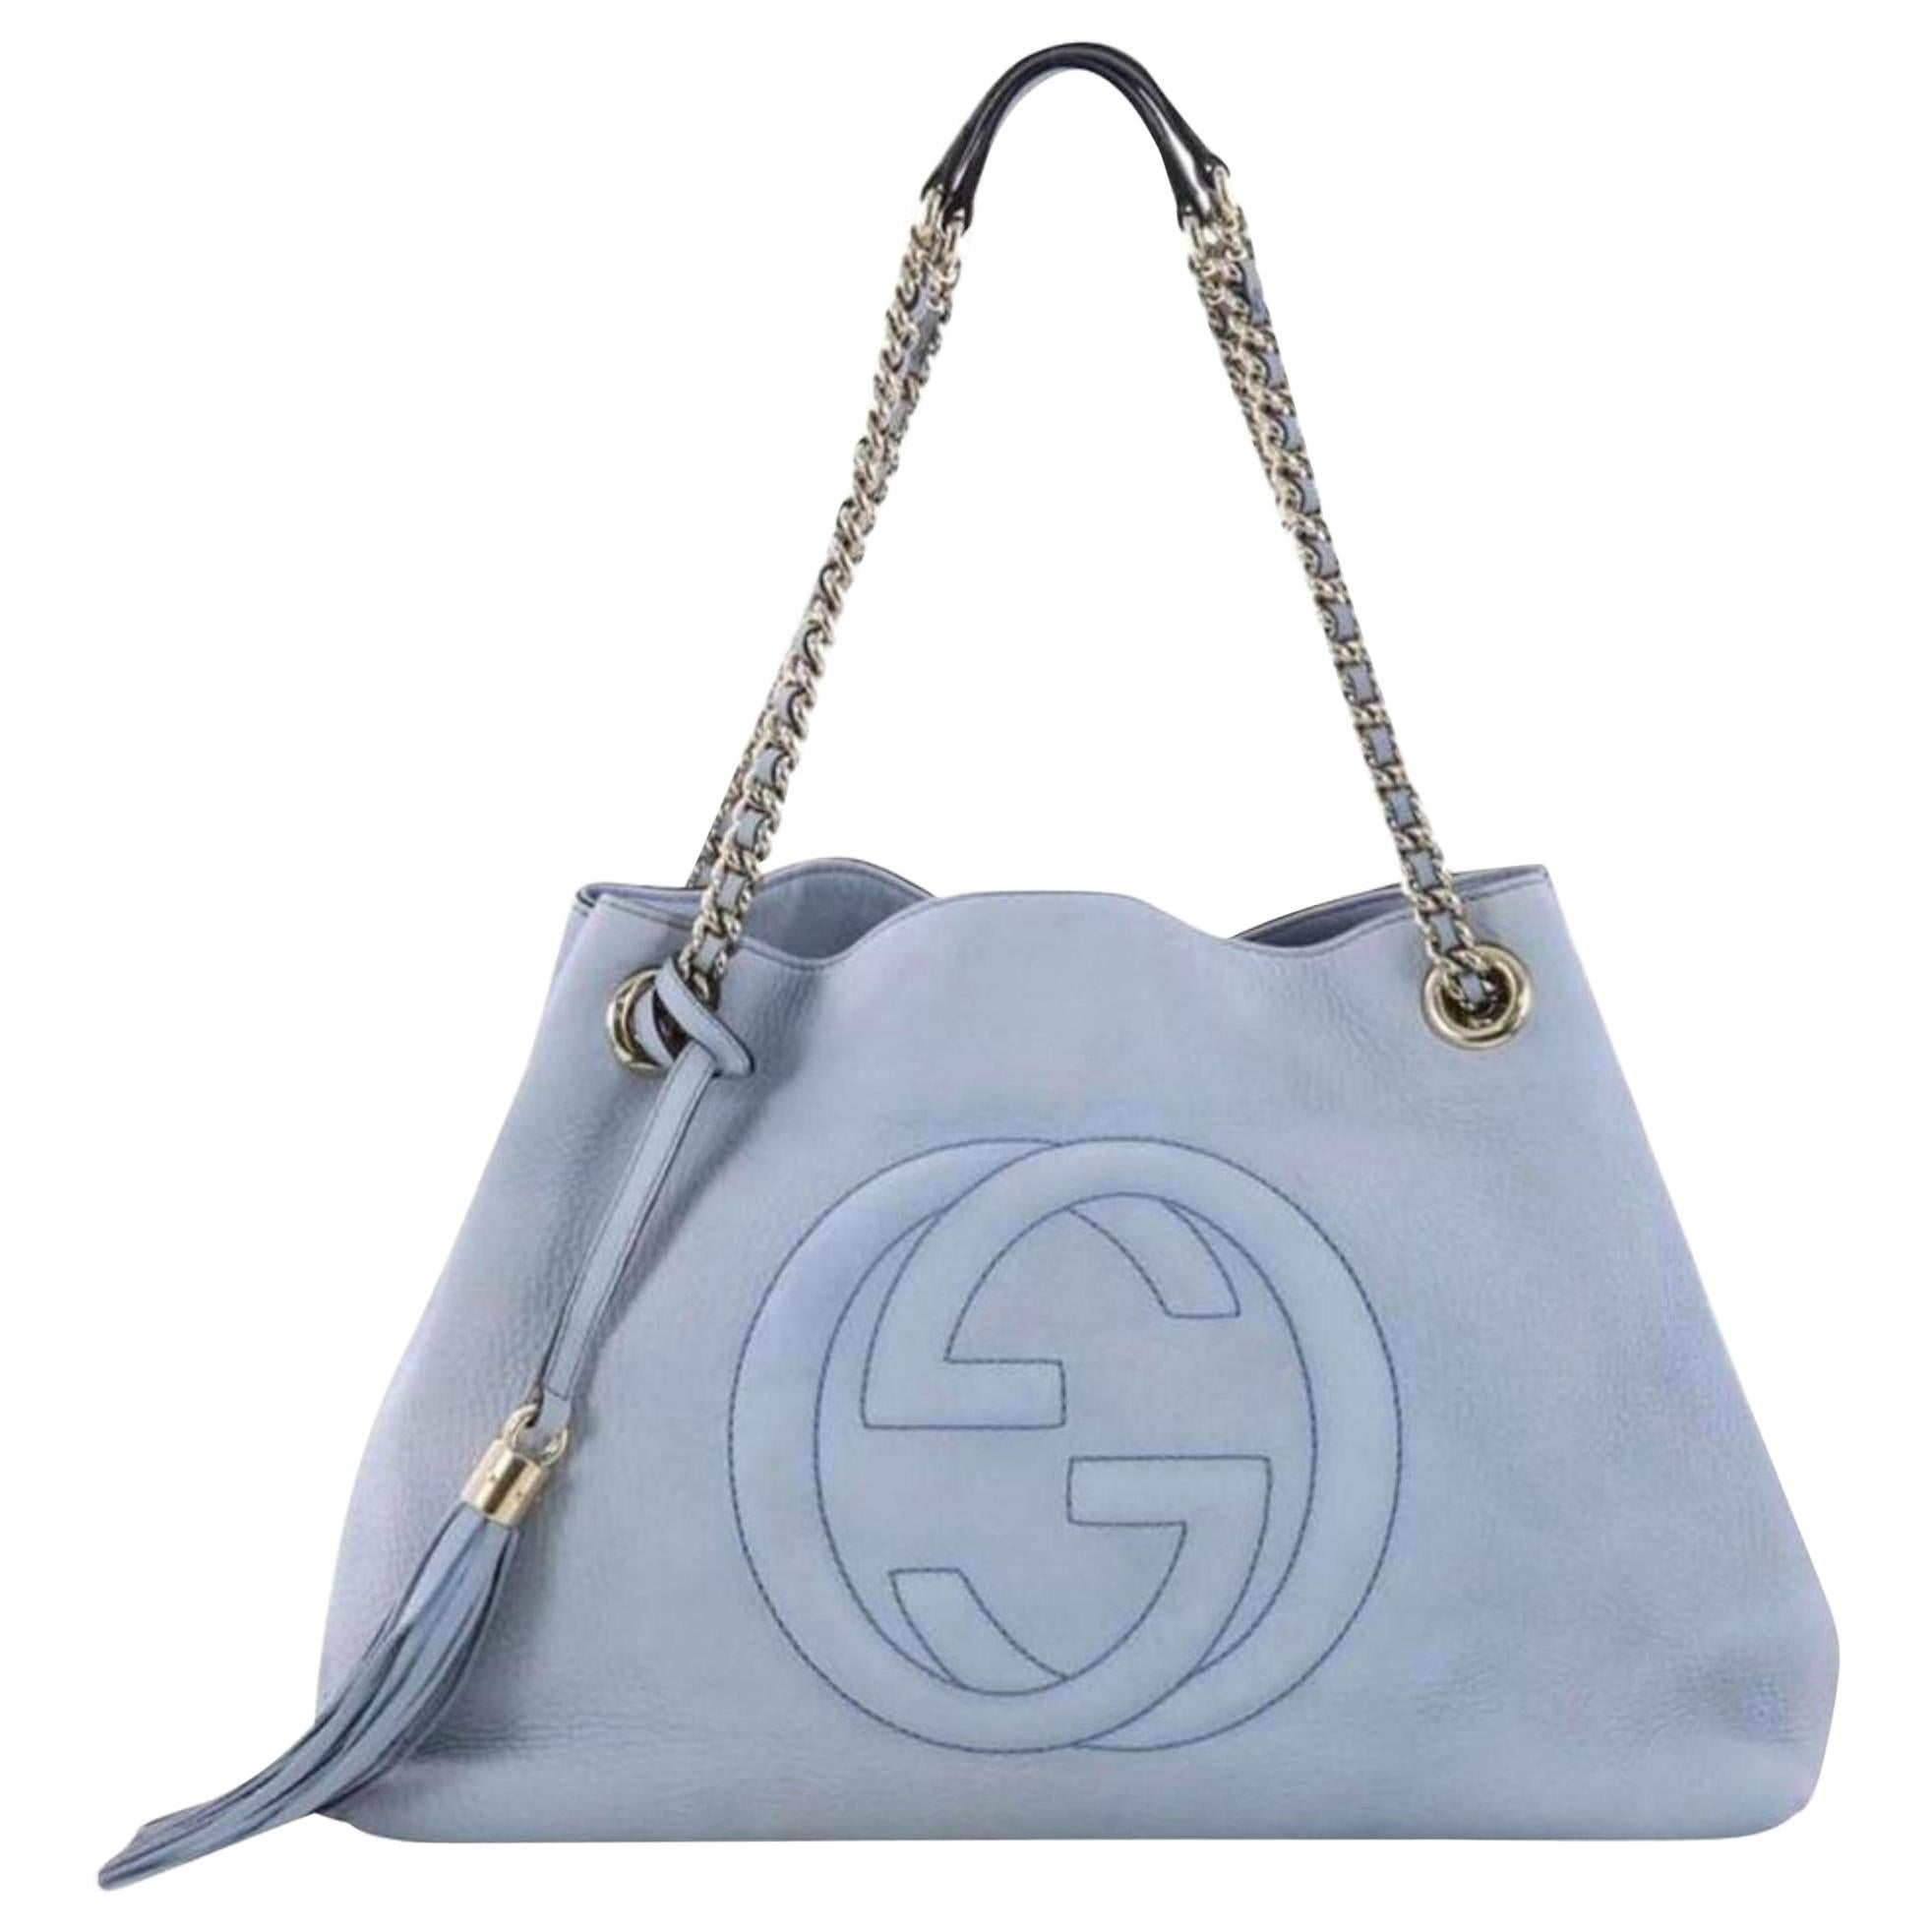 Gucci Soho Fringe Tassel Chain Tote 869083 Light Blue Leather Shoulder Bag For Sale